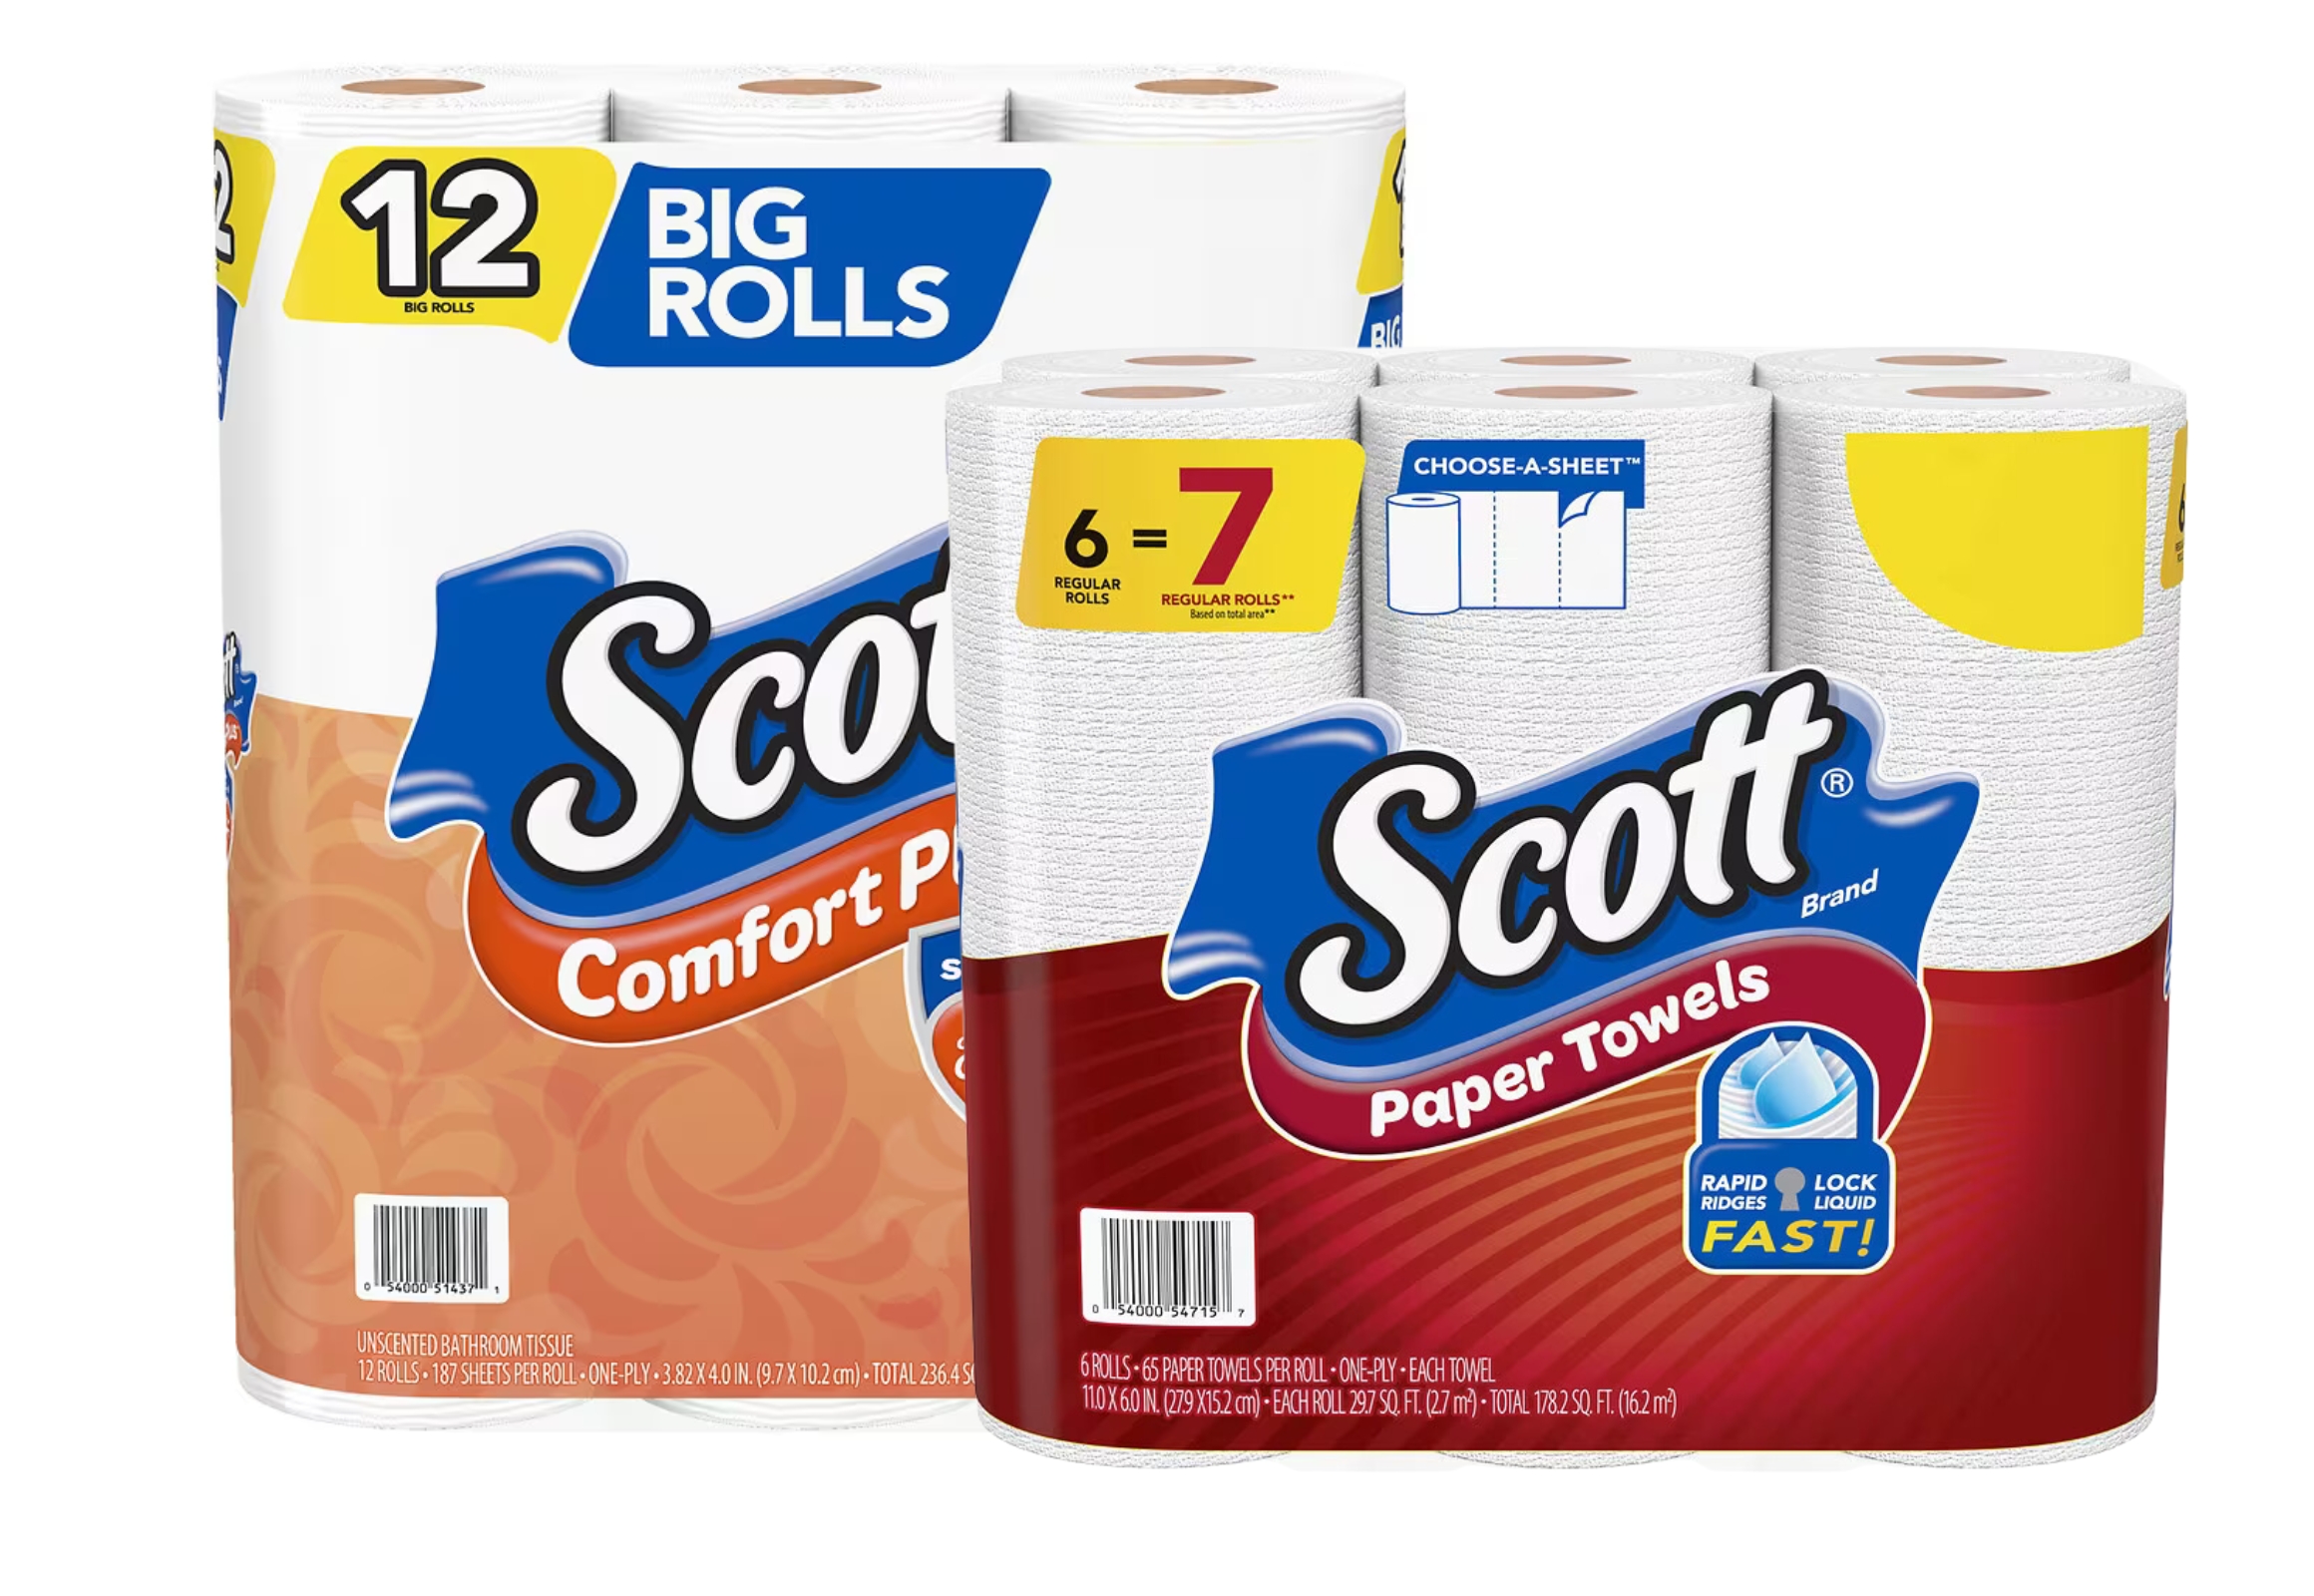 Scott Toilet Paper + Paper Towels